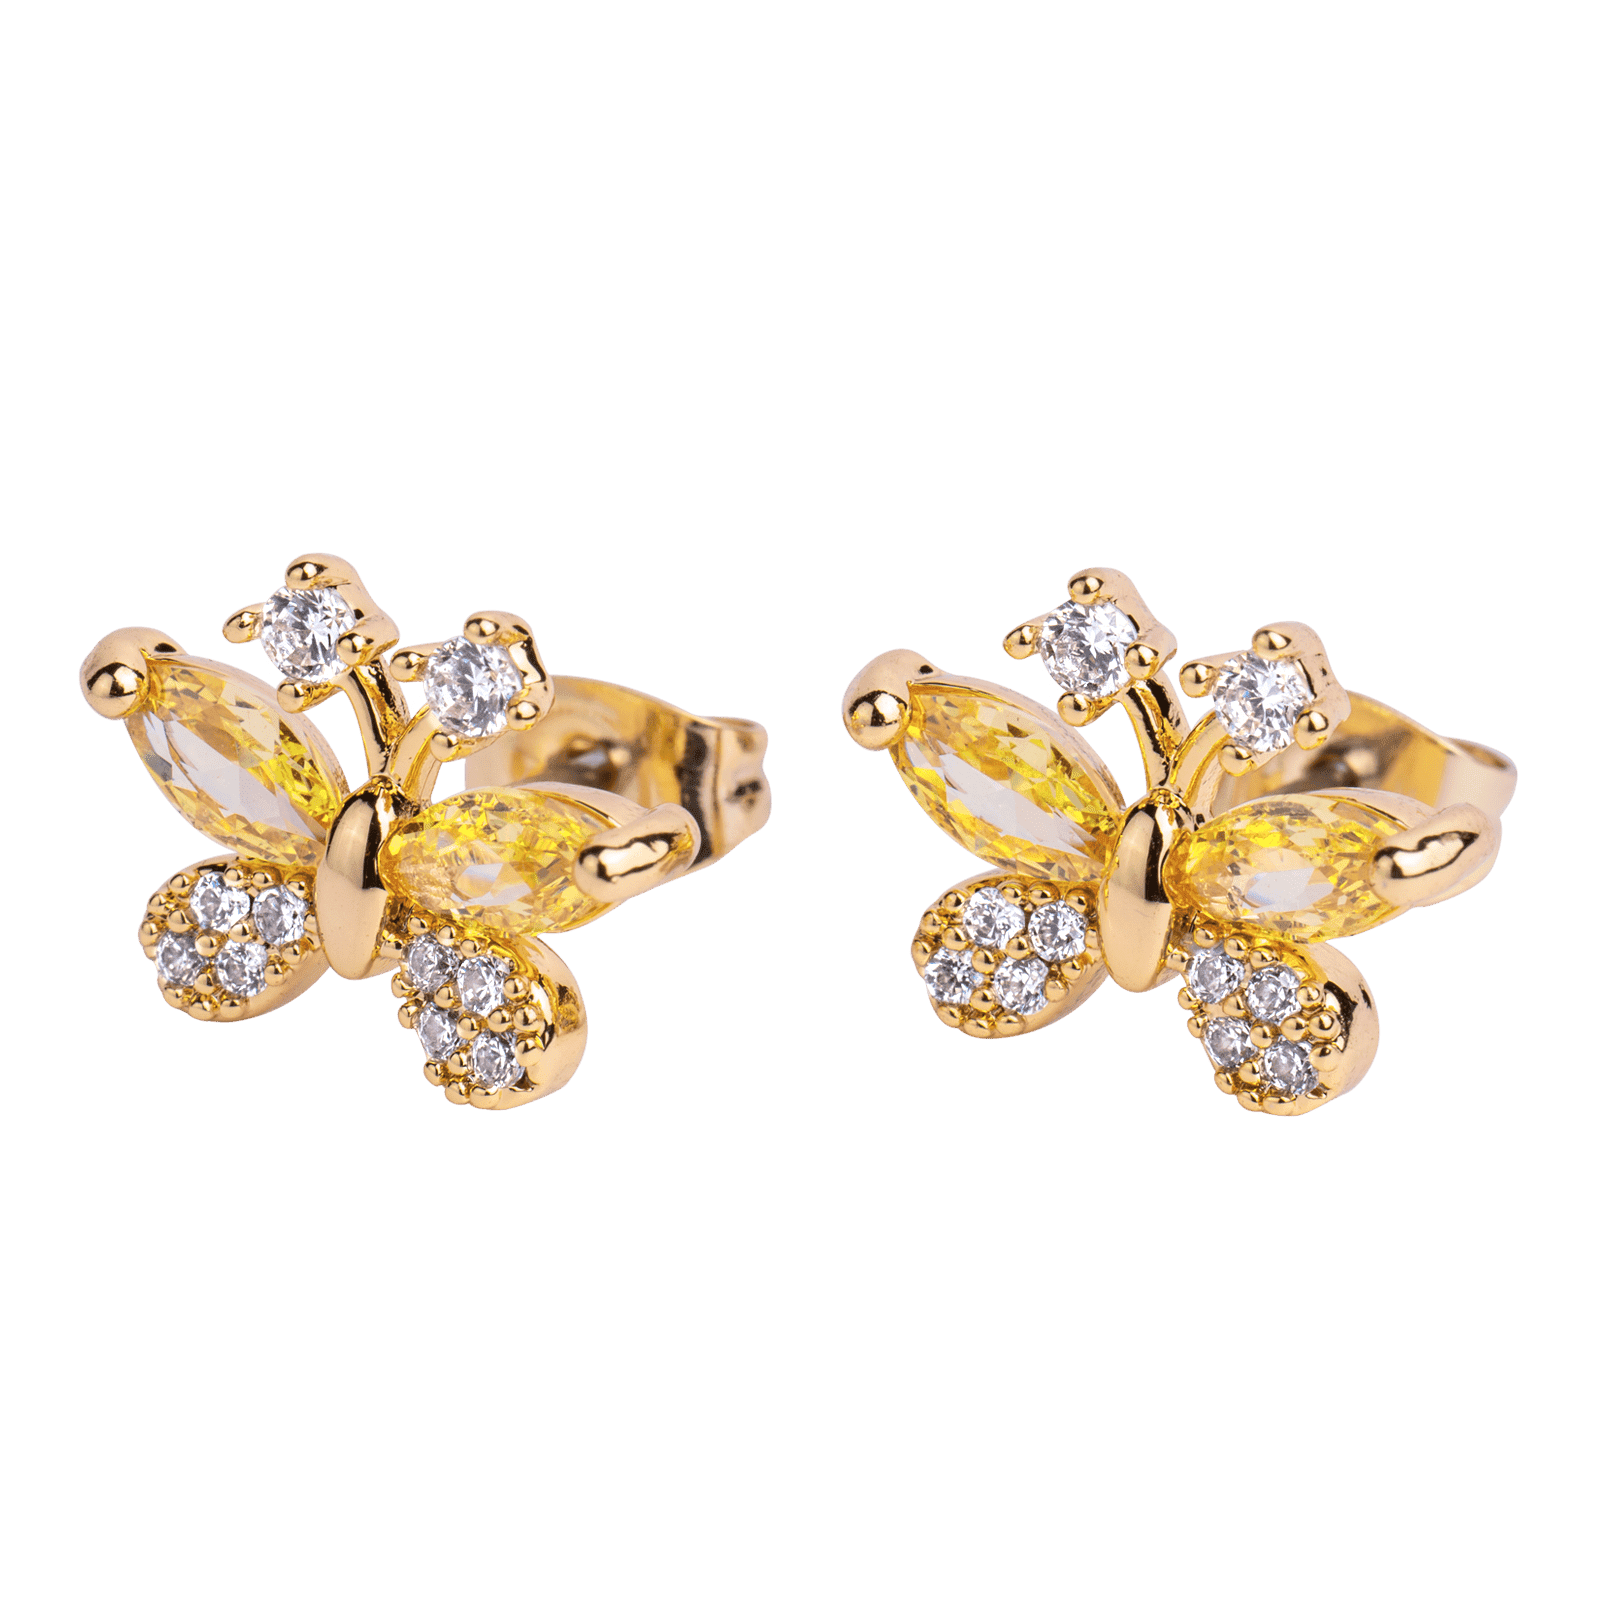 Oferta Cheriswelry 30 piezas de acero inoxidable para pendientes dorados,  15 estilos con mariposa de seguridad, kit de aretes para hacer joyas y  regalos